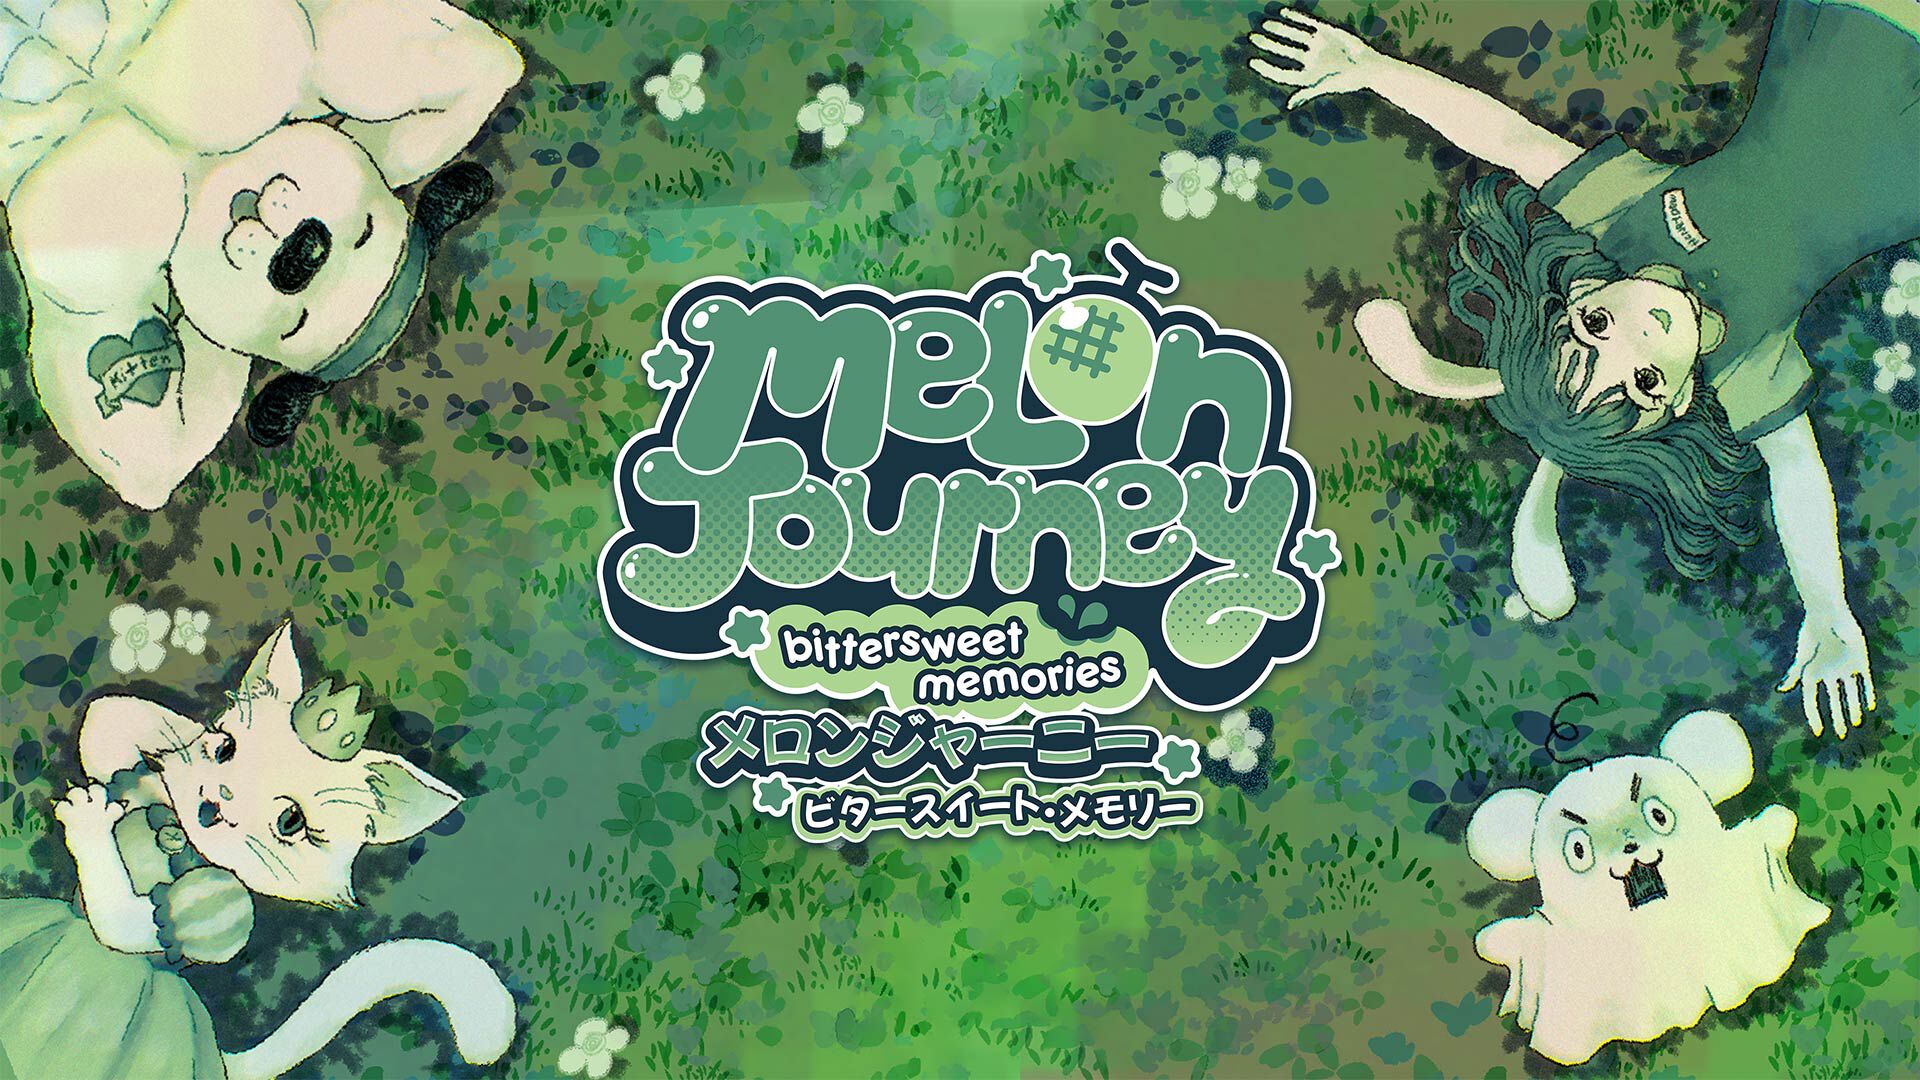 Melon Journey: Bittersweet Memories (メロンジャーニー：ビター